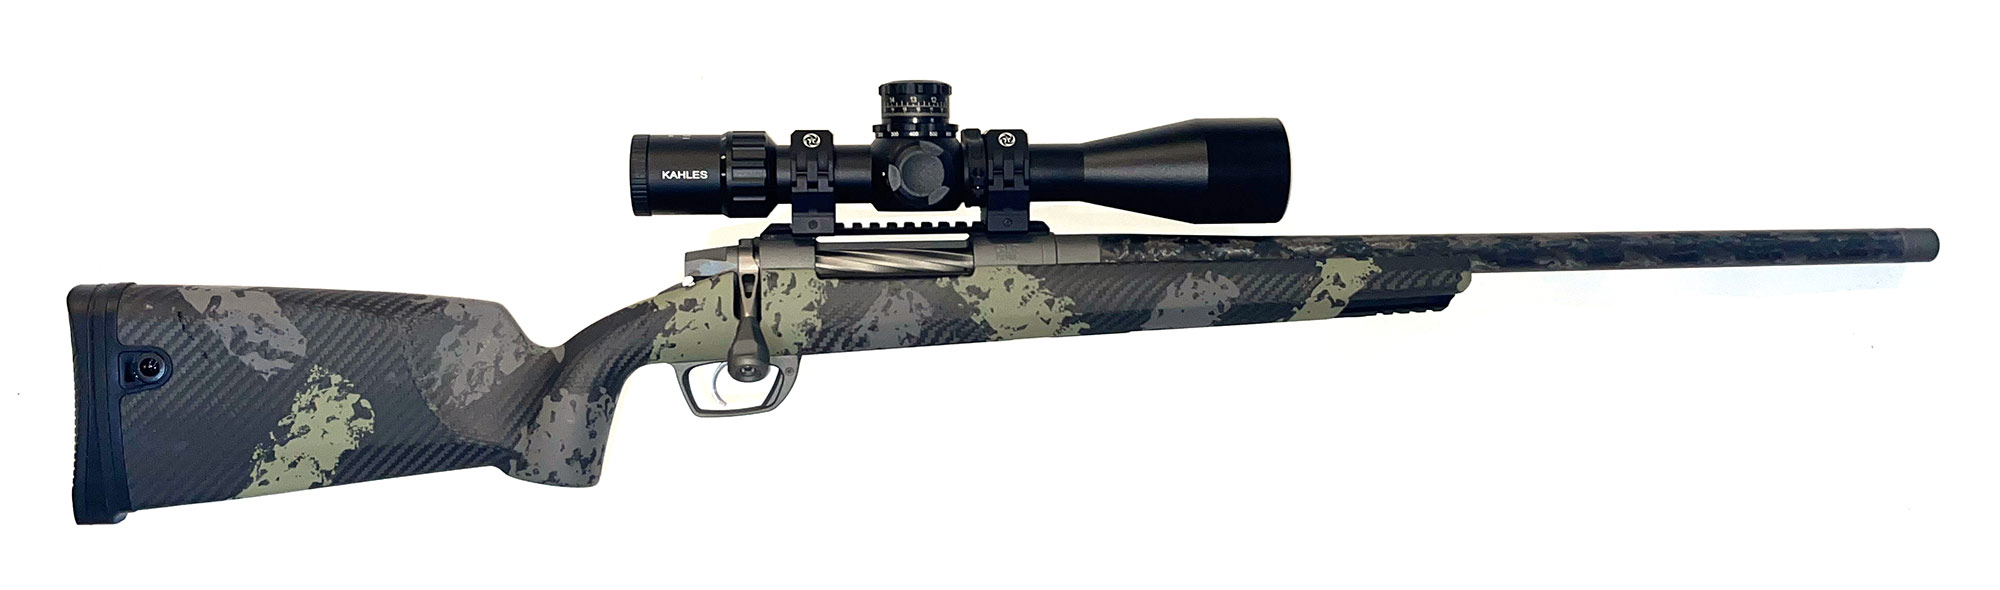 Magnus rifle system 7LRM,|f2782